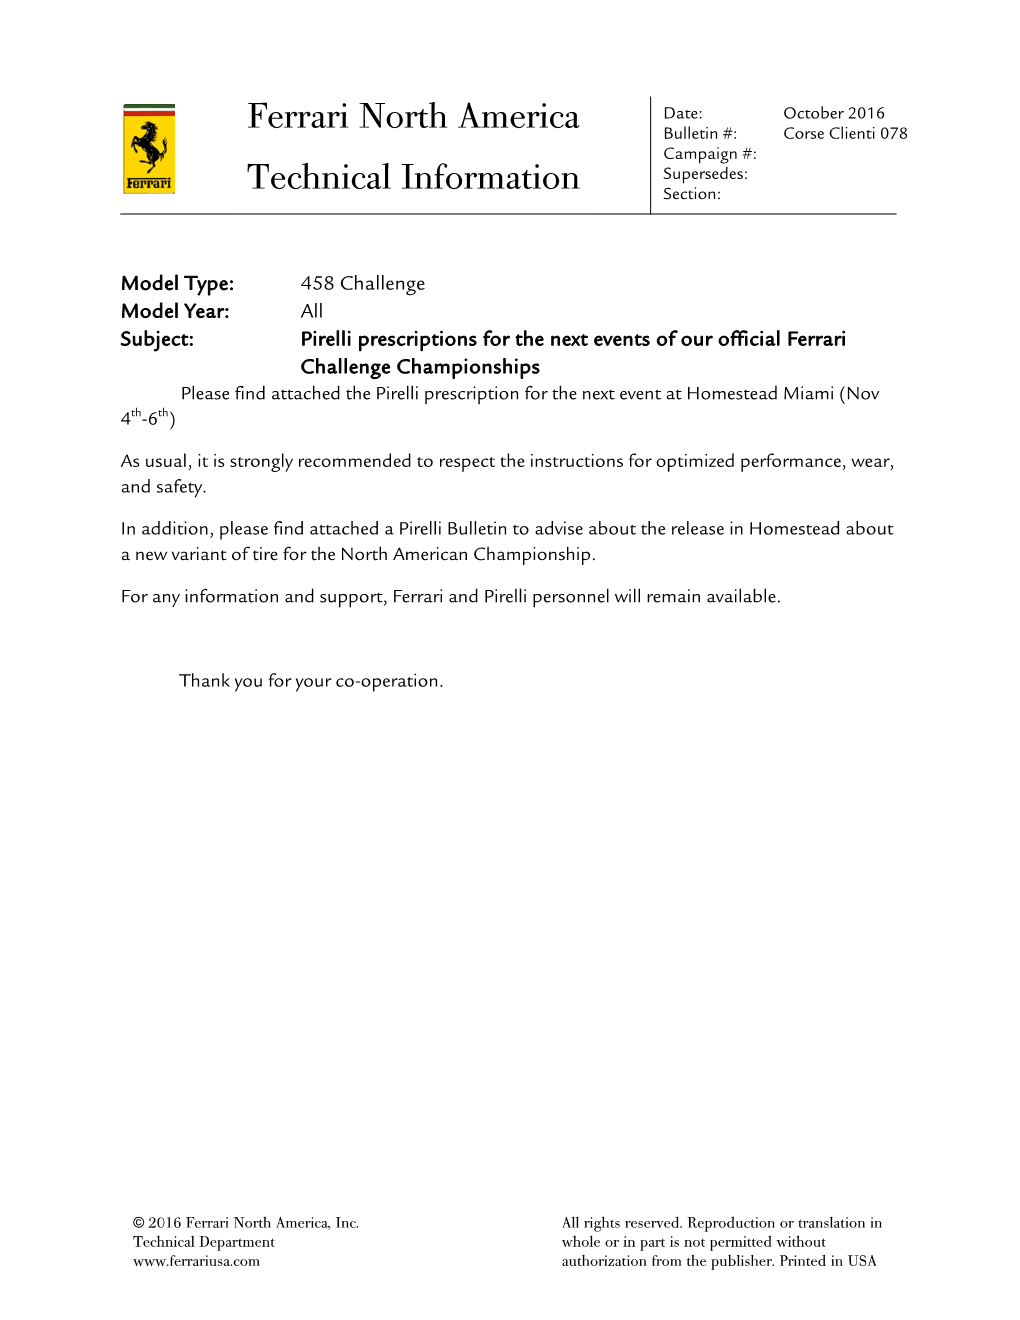 Ferrari North America Technical Information